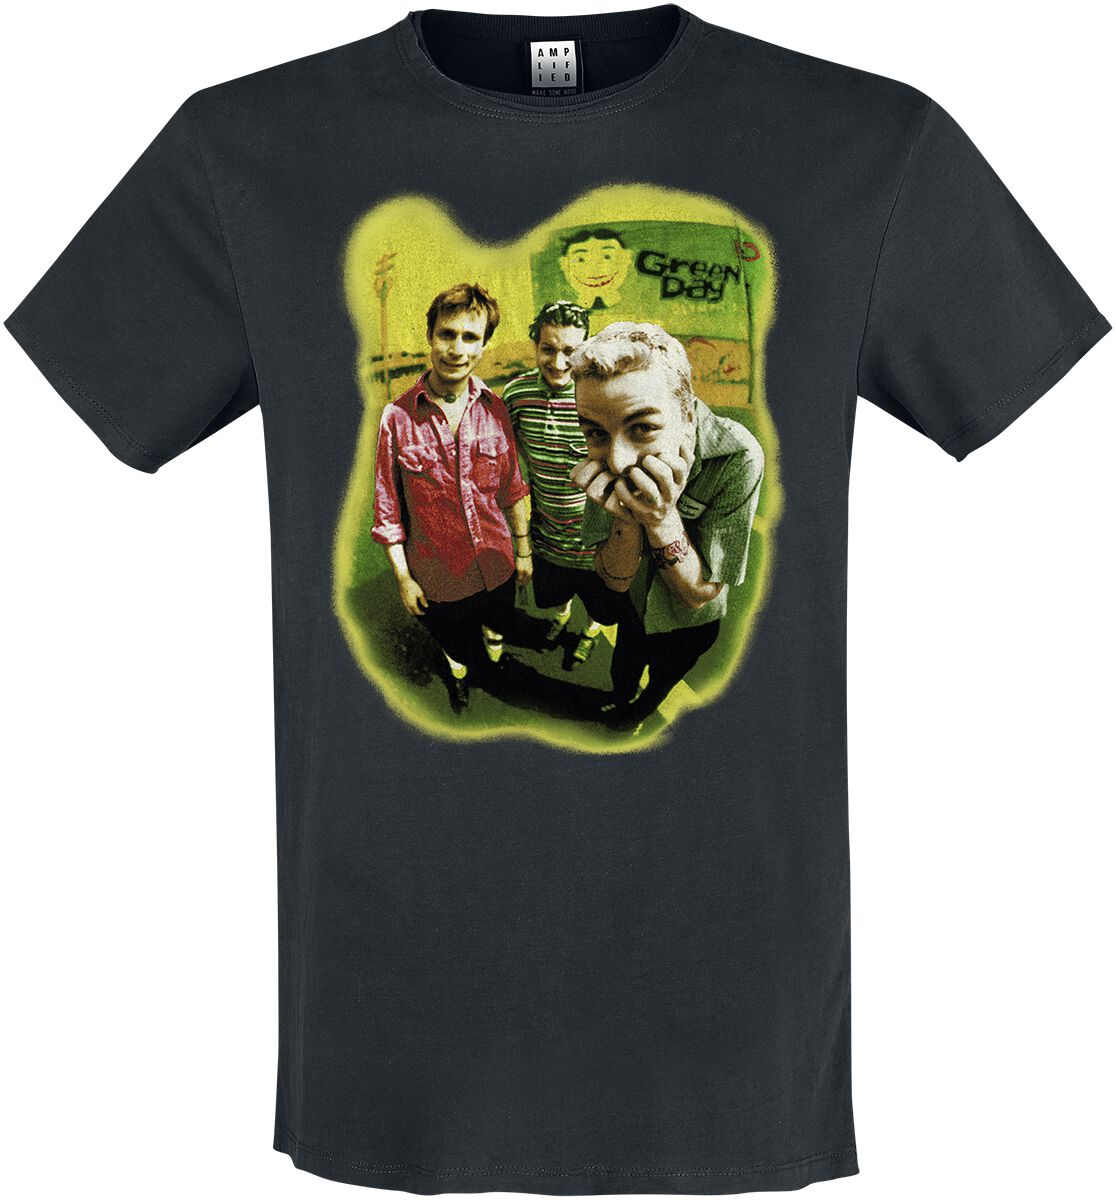 Green Day T-Shirt - Amplified Collection - Mugshot Rebels - M bis XL - für Männer - Größe L - schwarz  - Lizenziertes Merchandise!